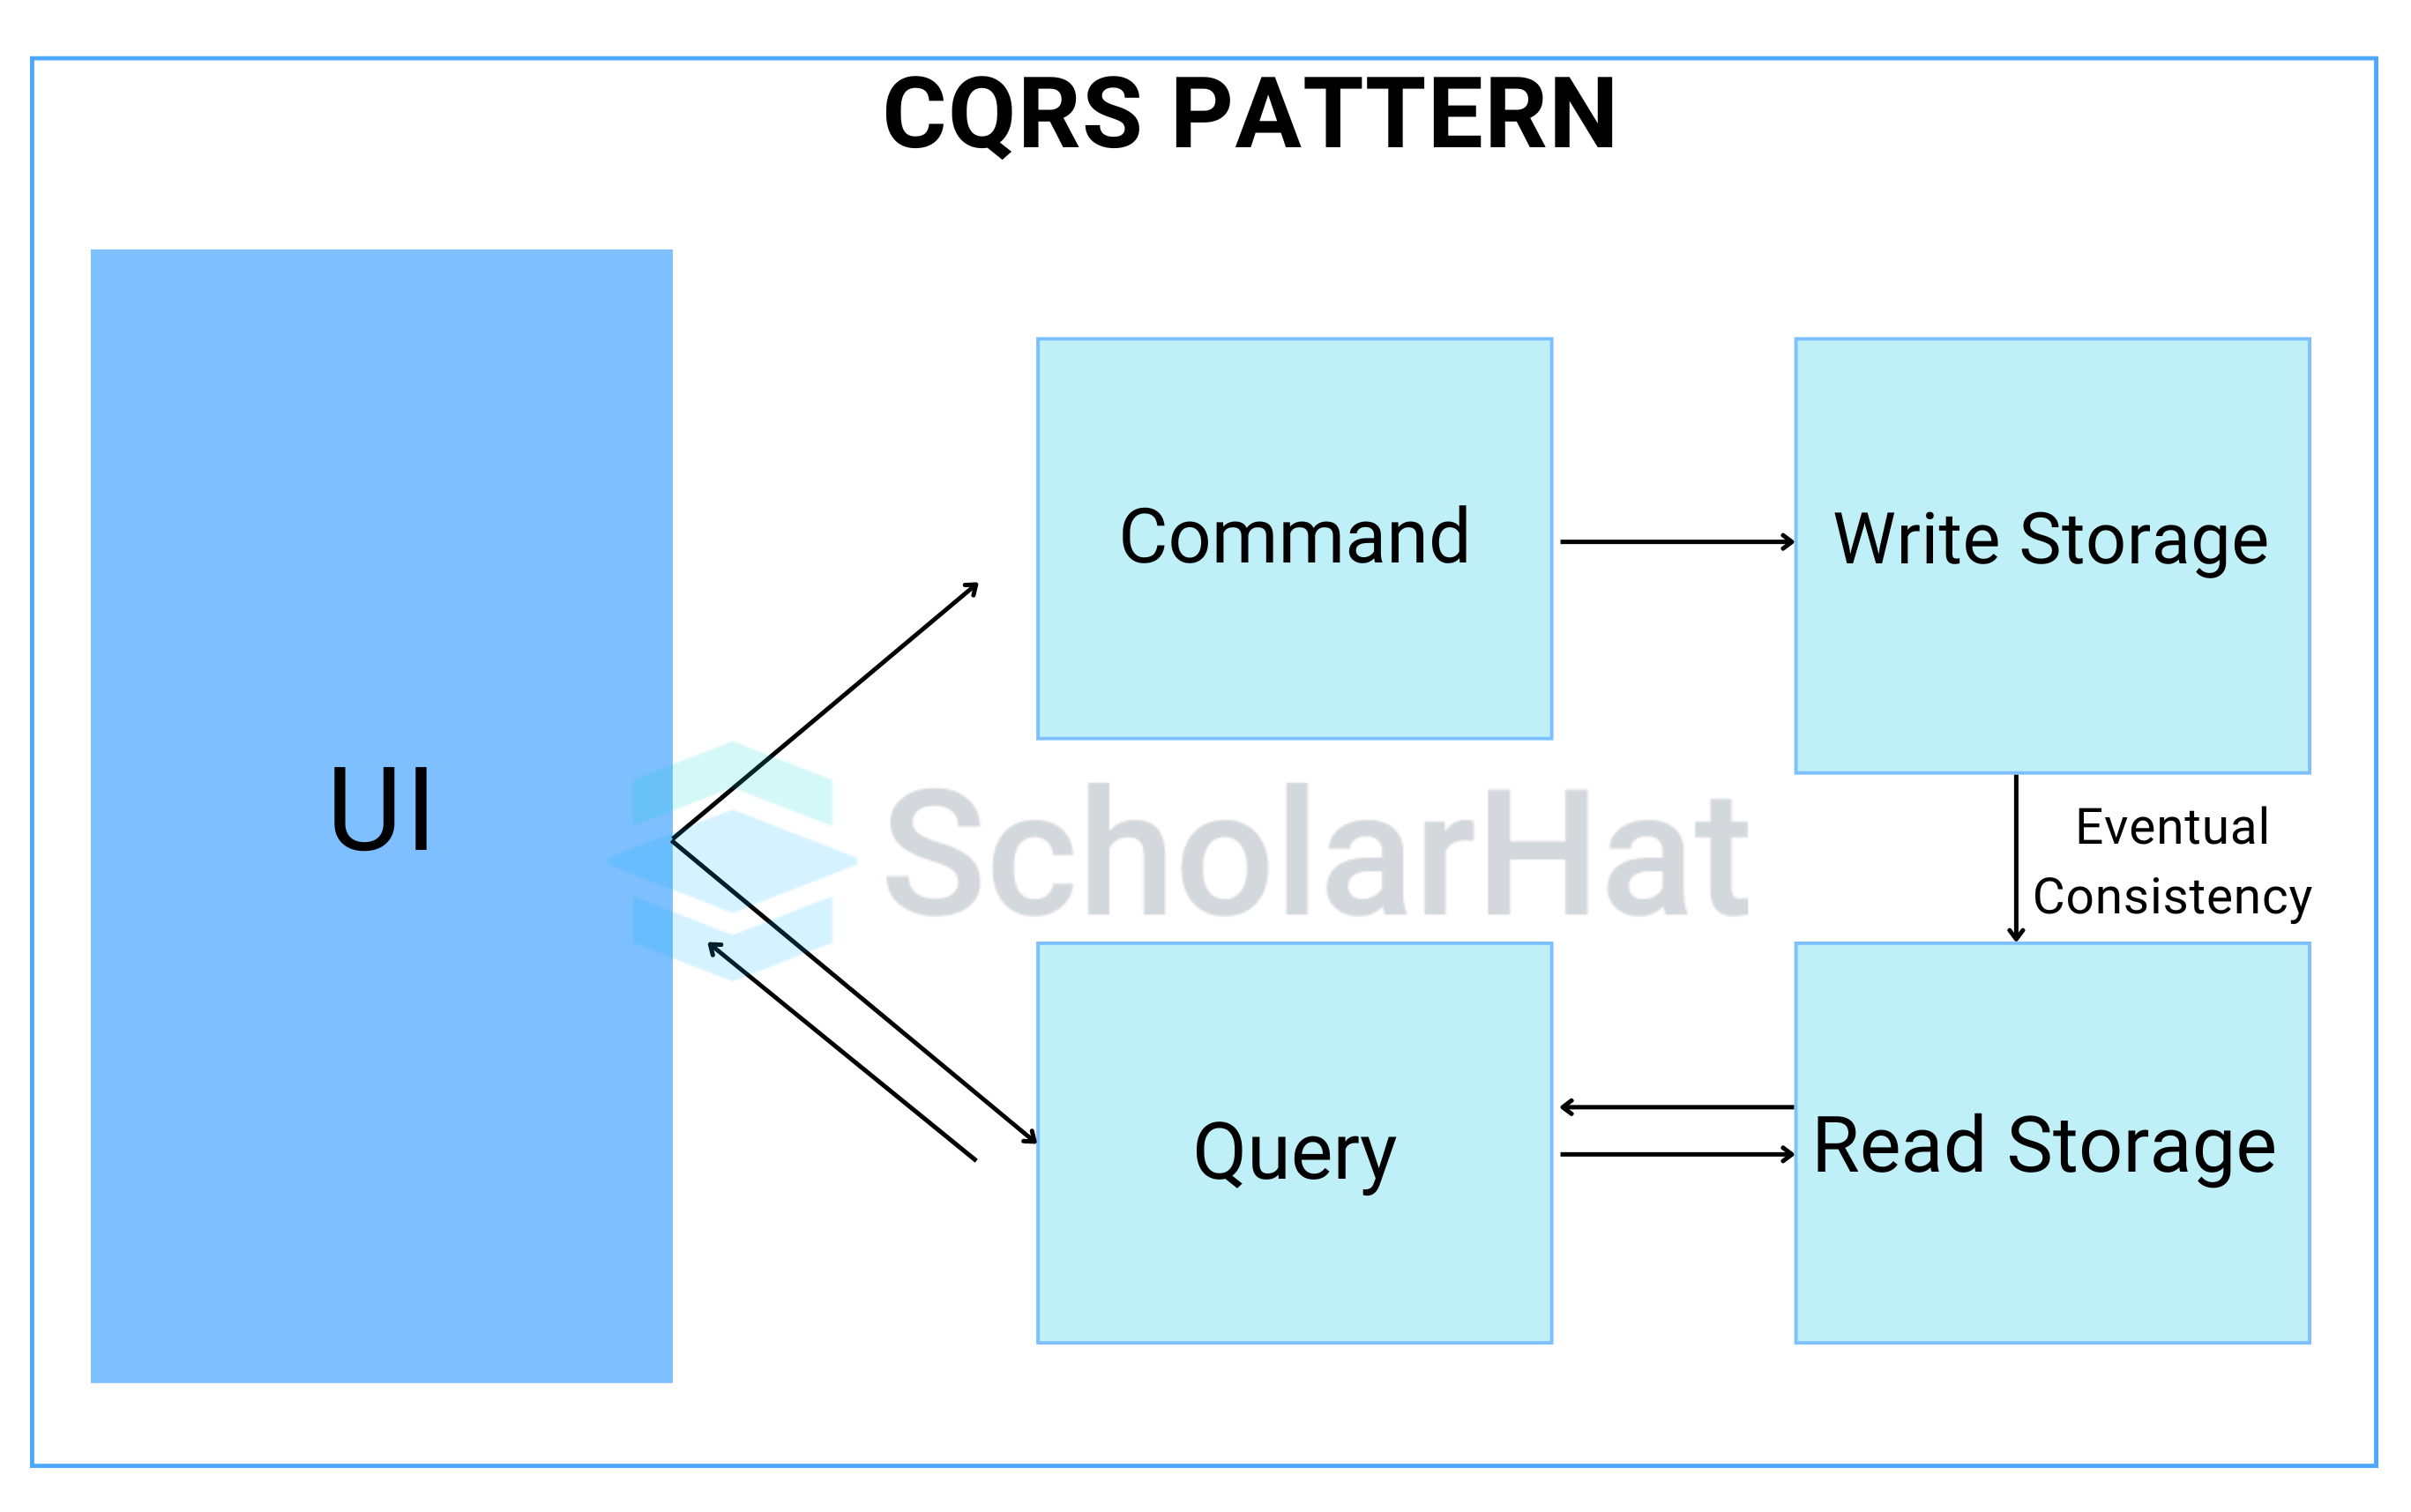 Explain the CQRS pattern.